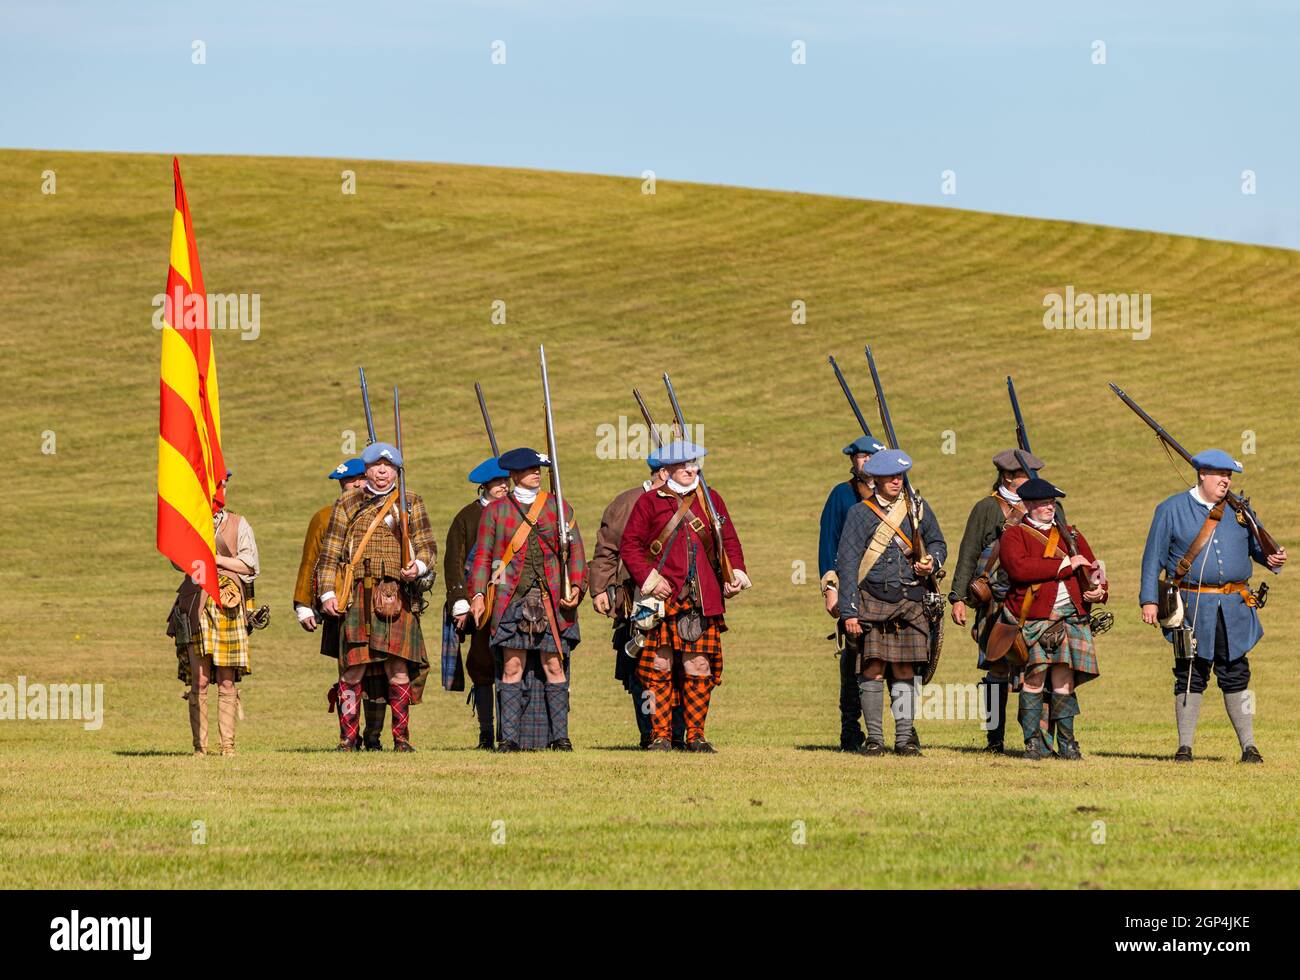 Jacobite Schotten in historischen Kostüm mit Gewehren für Nachstellung der Schlacht von Prestonpans, East Lothian, Schottland, Großbritannien Stockfoto